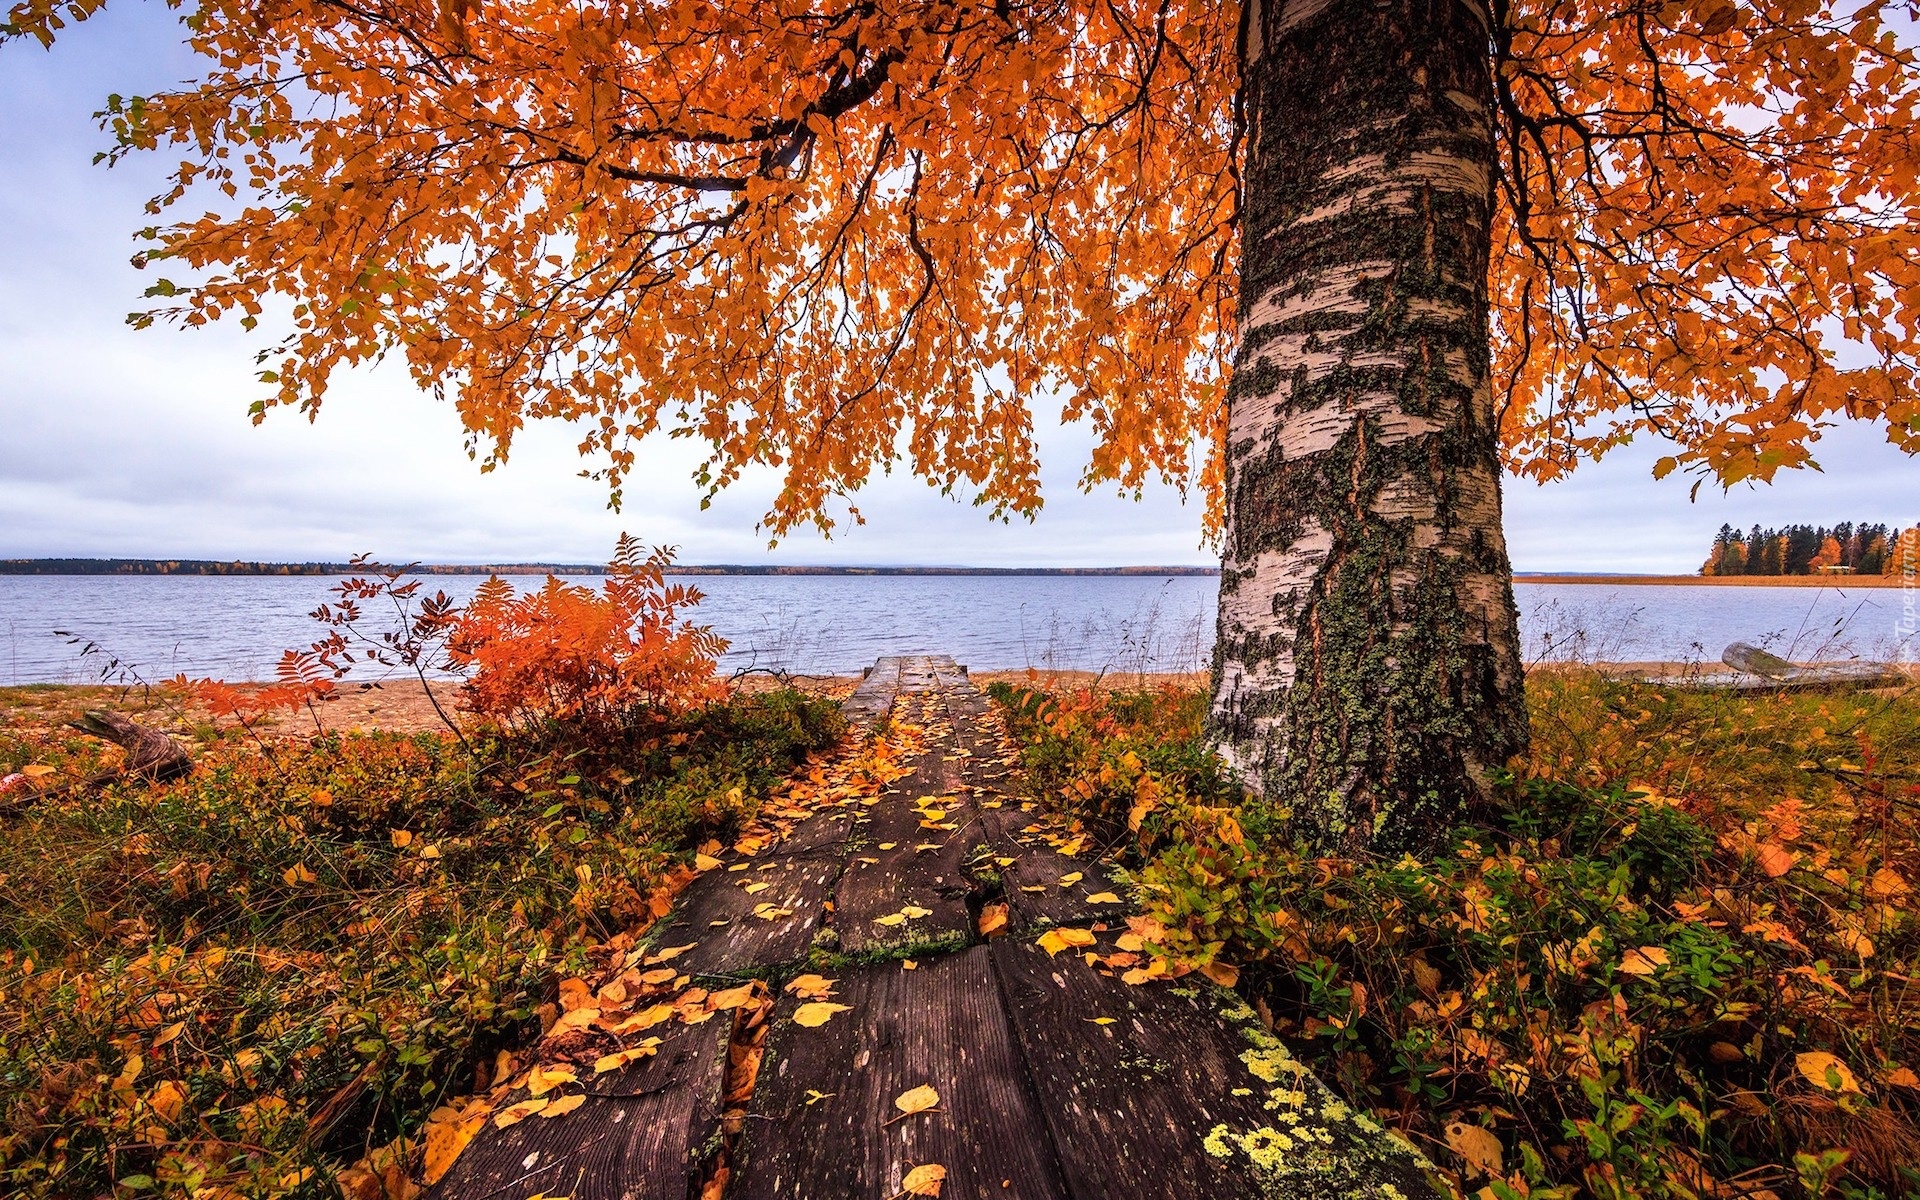 Jezioro, Jesień, Drzewo, Brzoza, Kładka, Liście